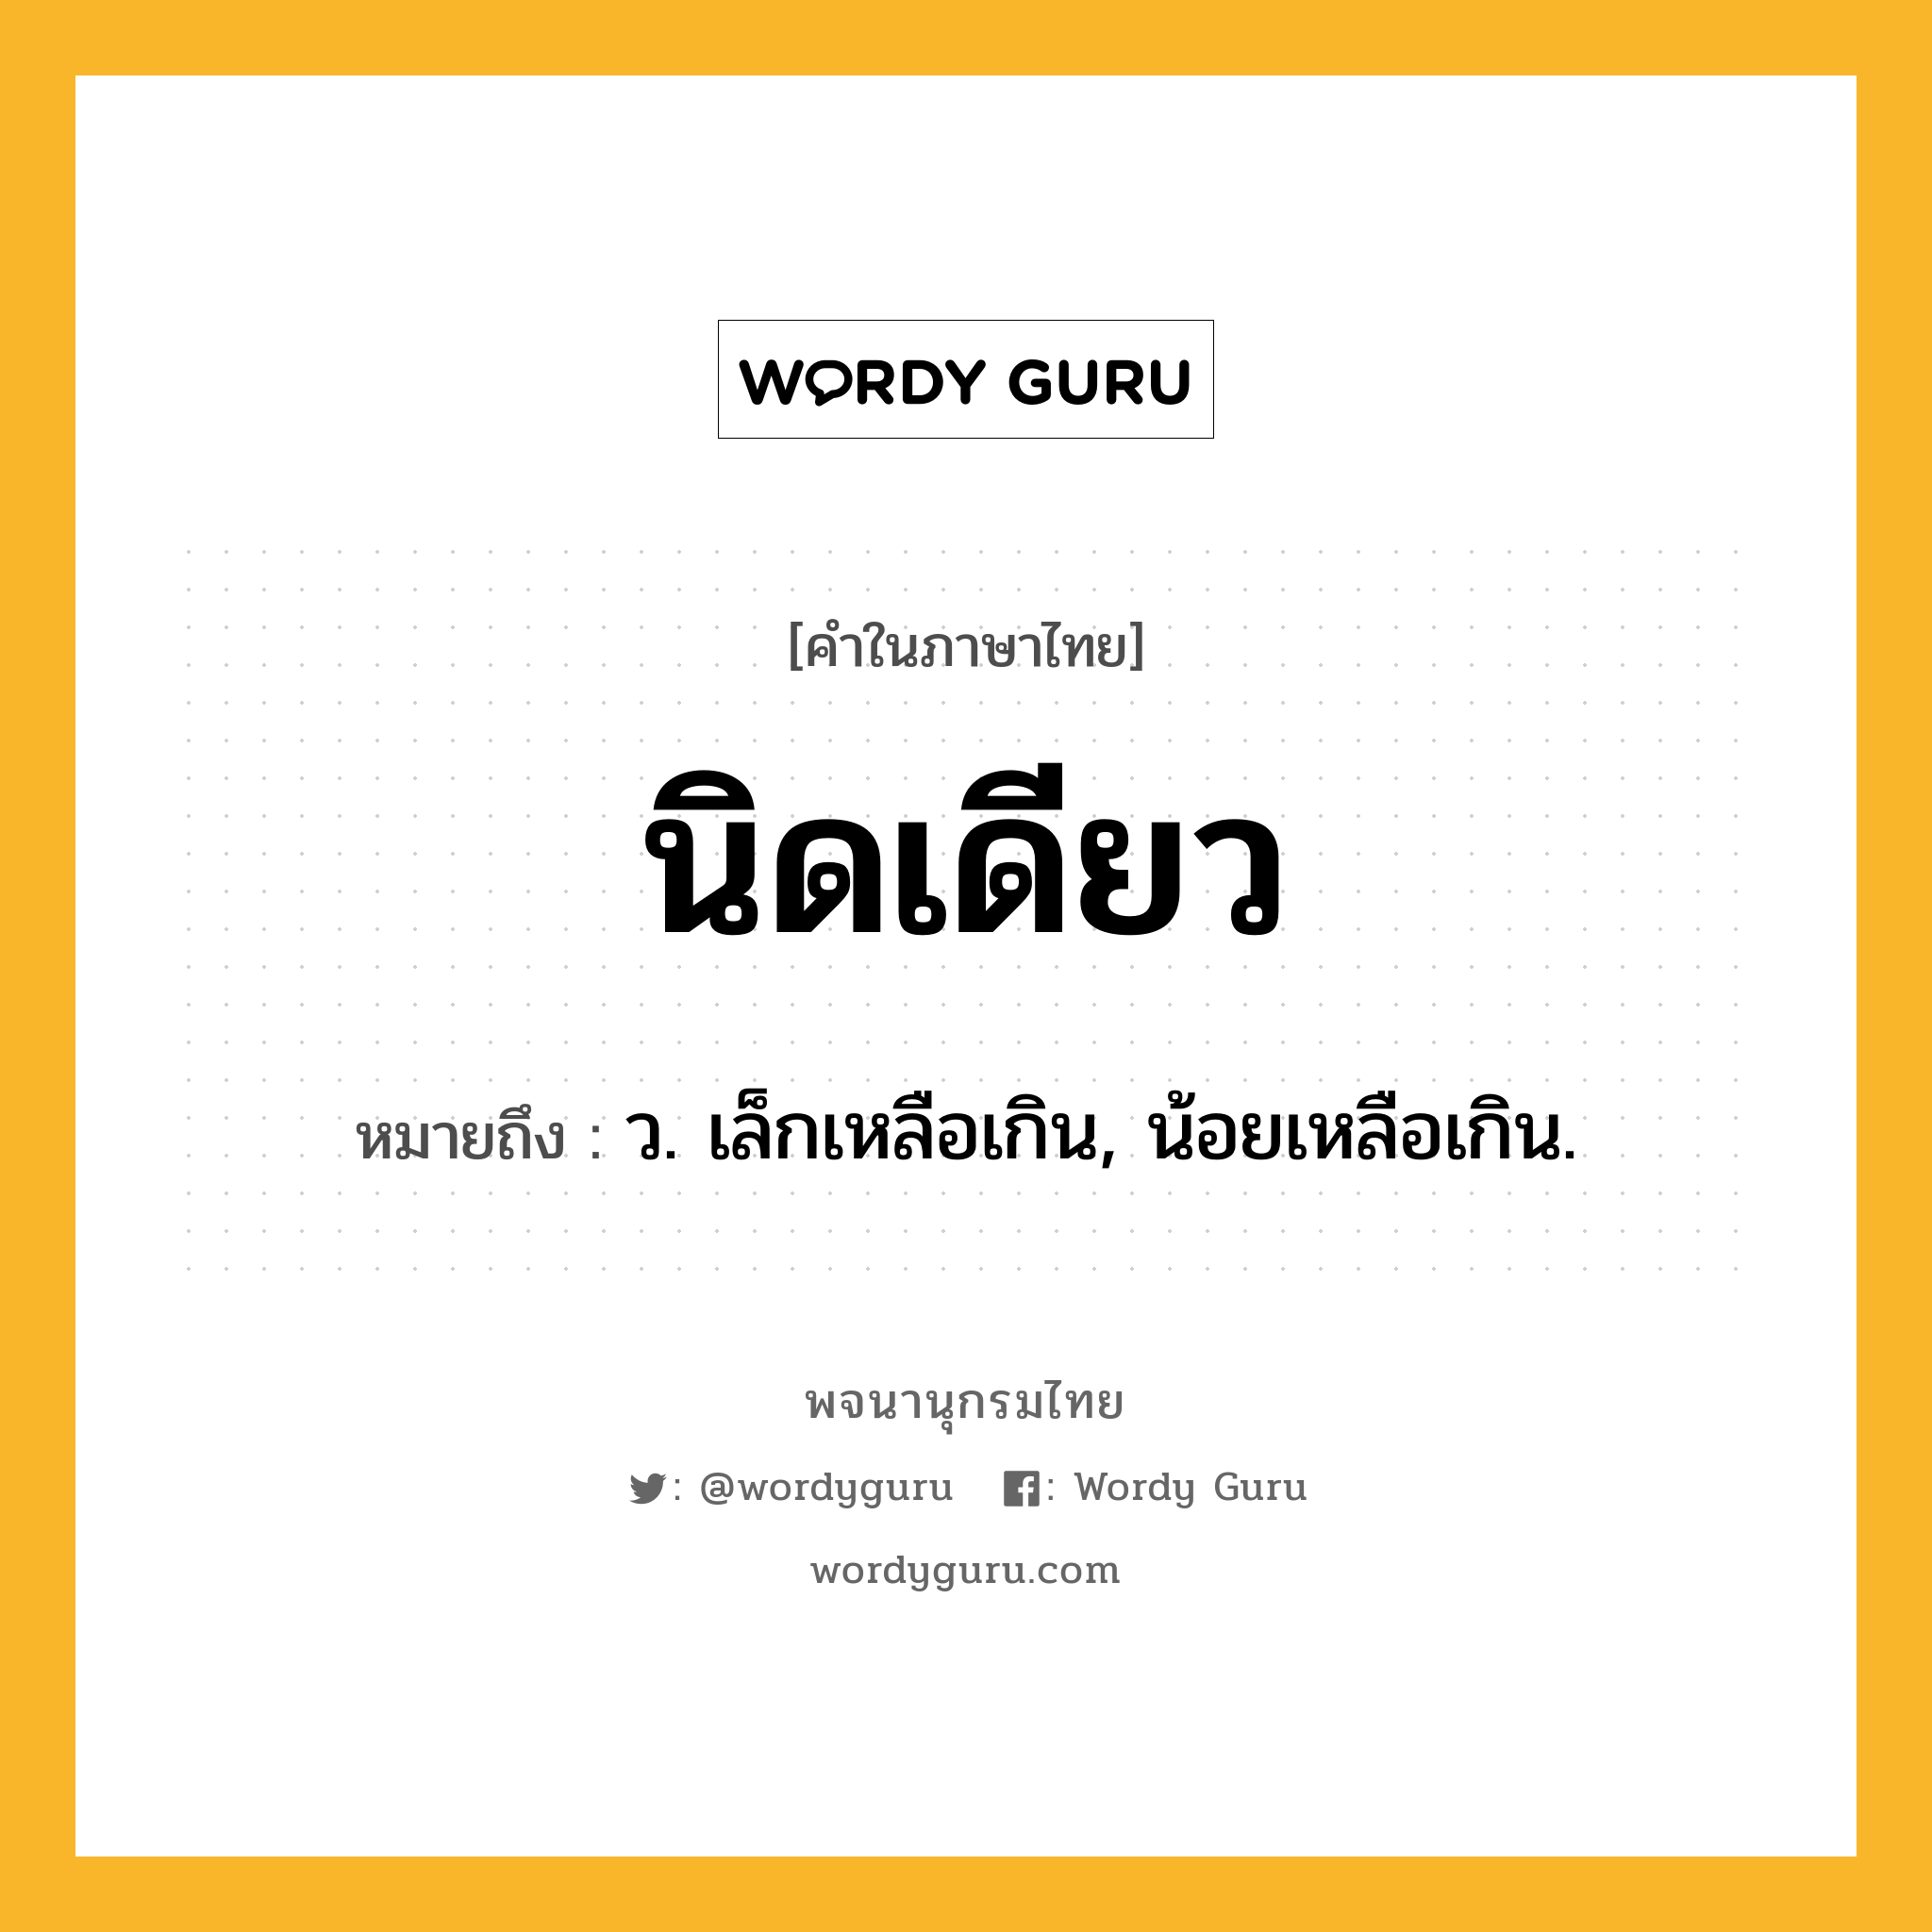 นิดเดียว หมายถึงอะไร?, คำในภาษาไทย นิดเดียว หมายถึง ว. เล็กเหลือเกิน, น้อยเหลือเกิน.